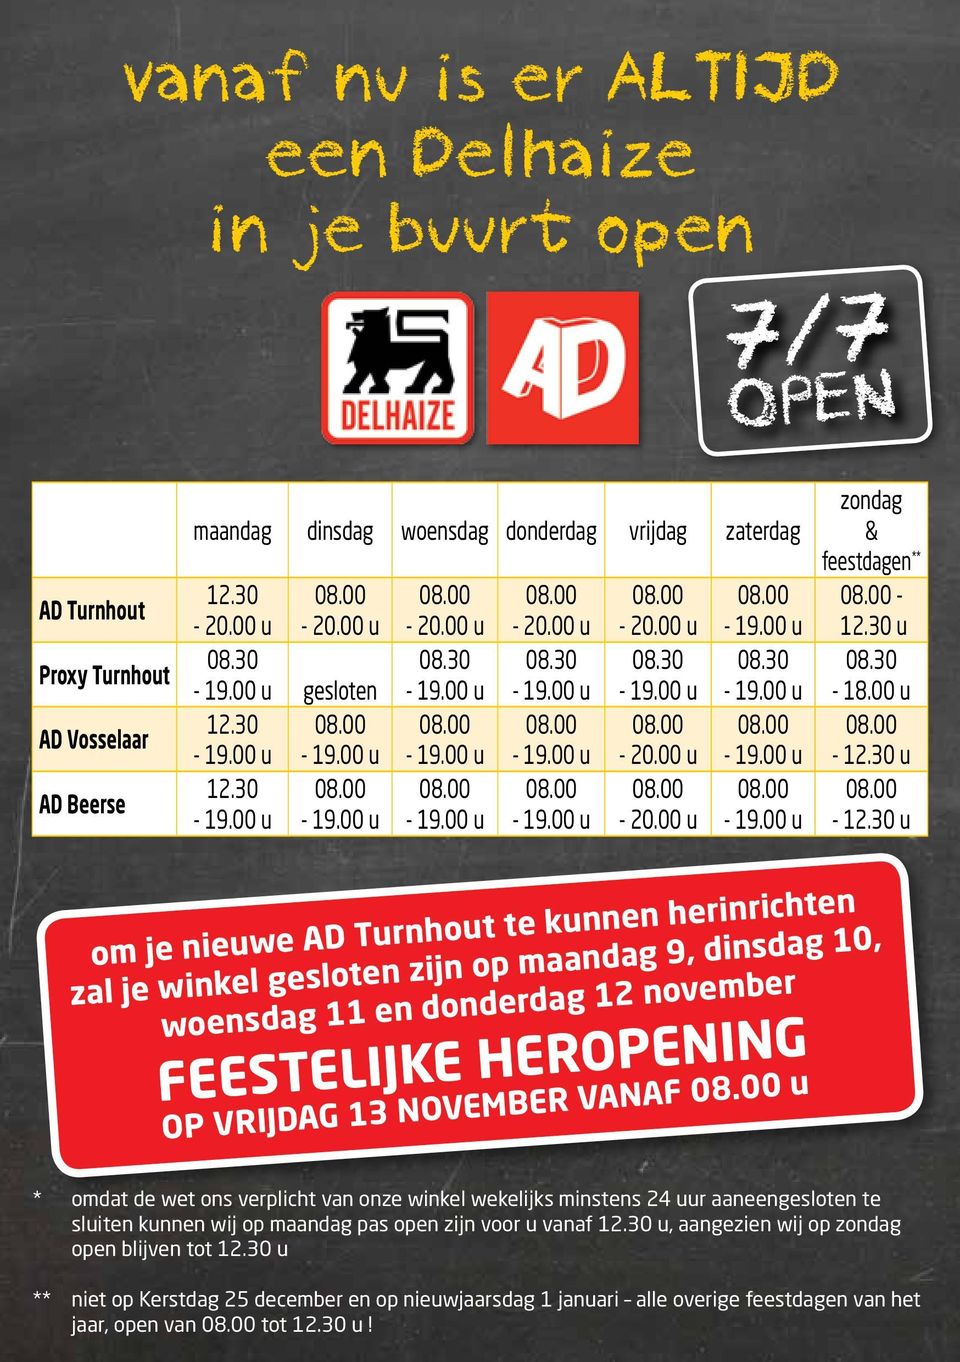 30 u om je nieuwe AD Turnhout te kunnen herinrichten zal je winkel gesloten zijn op maandag 9, dinsdag 10, woensdag 11 en donderdag 12 november FEESTELIJKE HEROPENING OP VRIJDAG 13 NOVEMBER VANAF u *